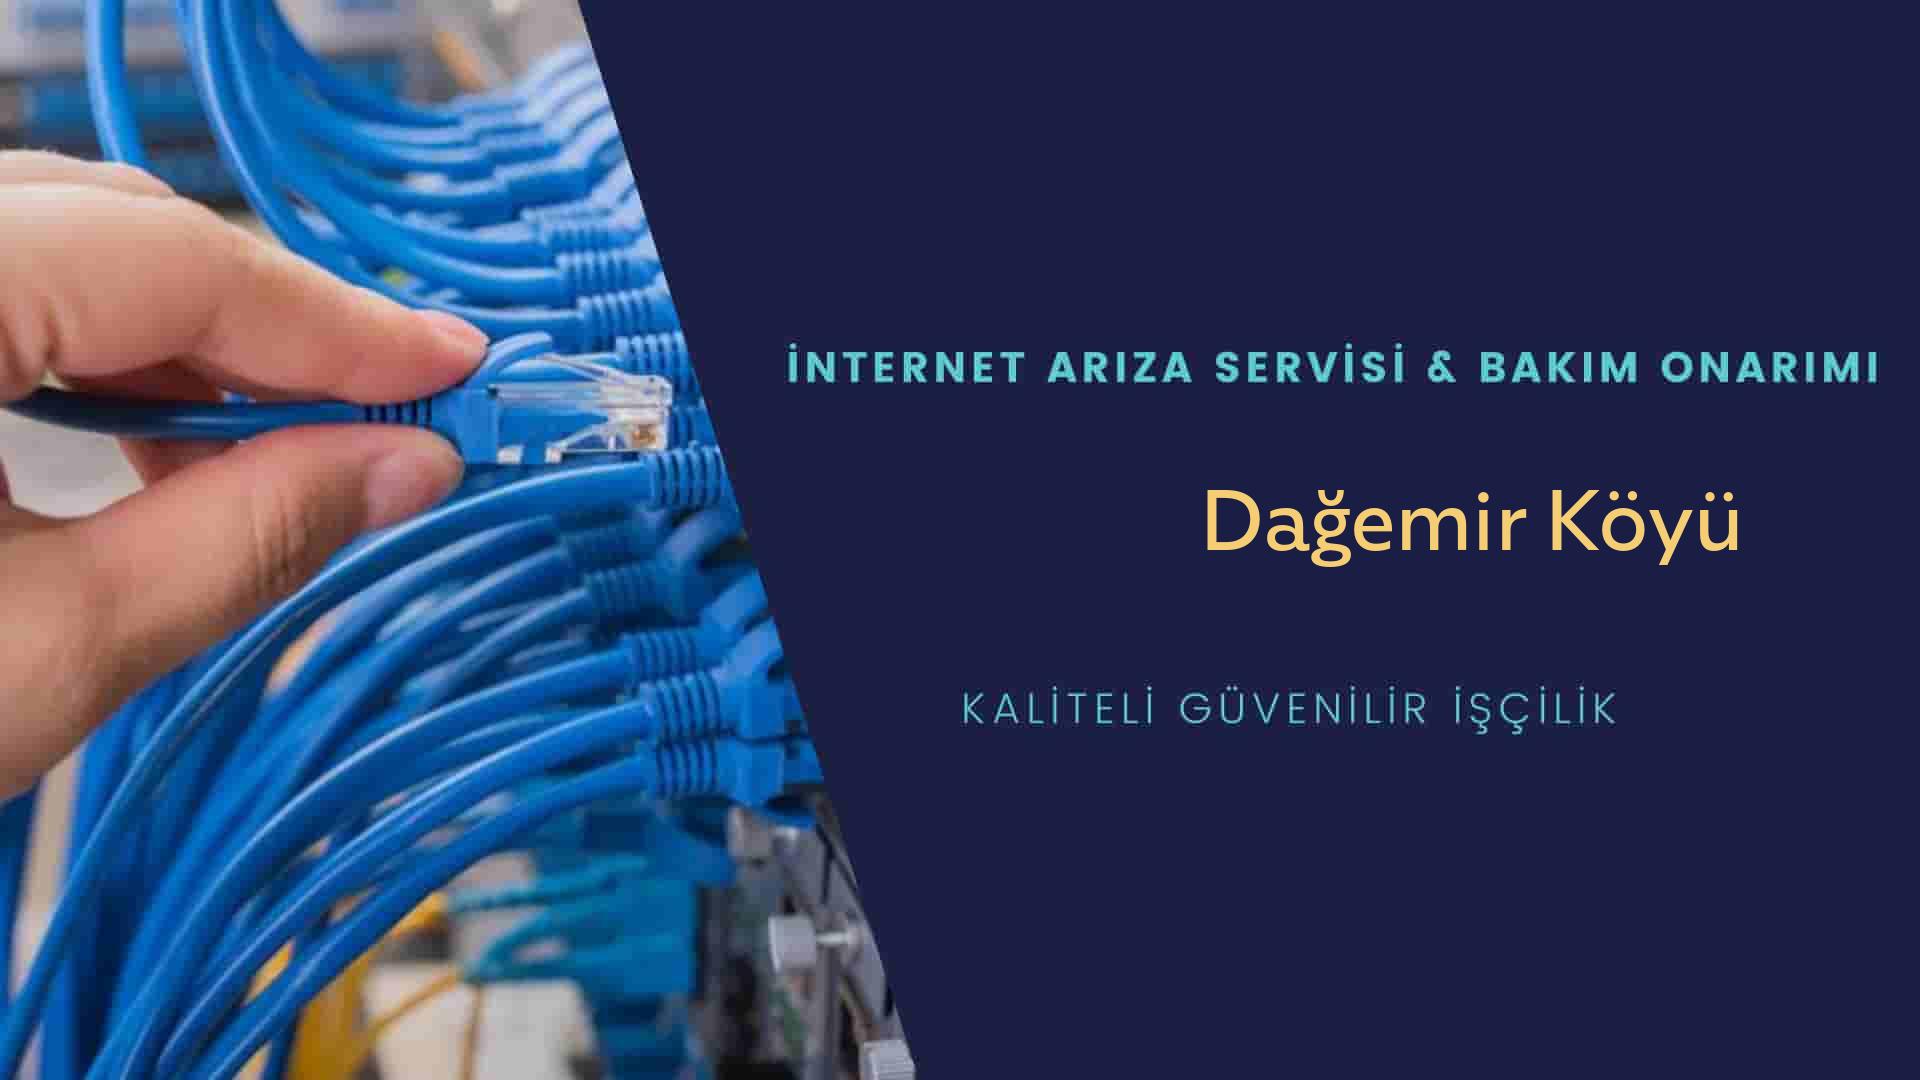 Dağemir Köyü internet kablosu çekimi yapan yerler veya elektrikçiler mi? arıyorsunuz doğru yerdesiniz o zaman sizlere 7/24 yardımcı olacak profesyonel ustalarımız bir telefon kadar yakındır size.